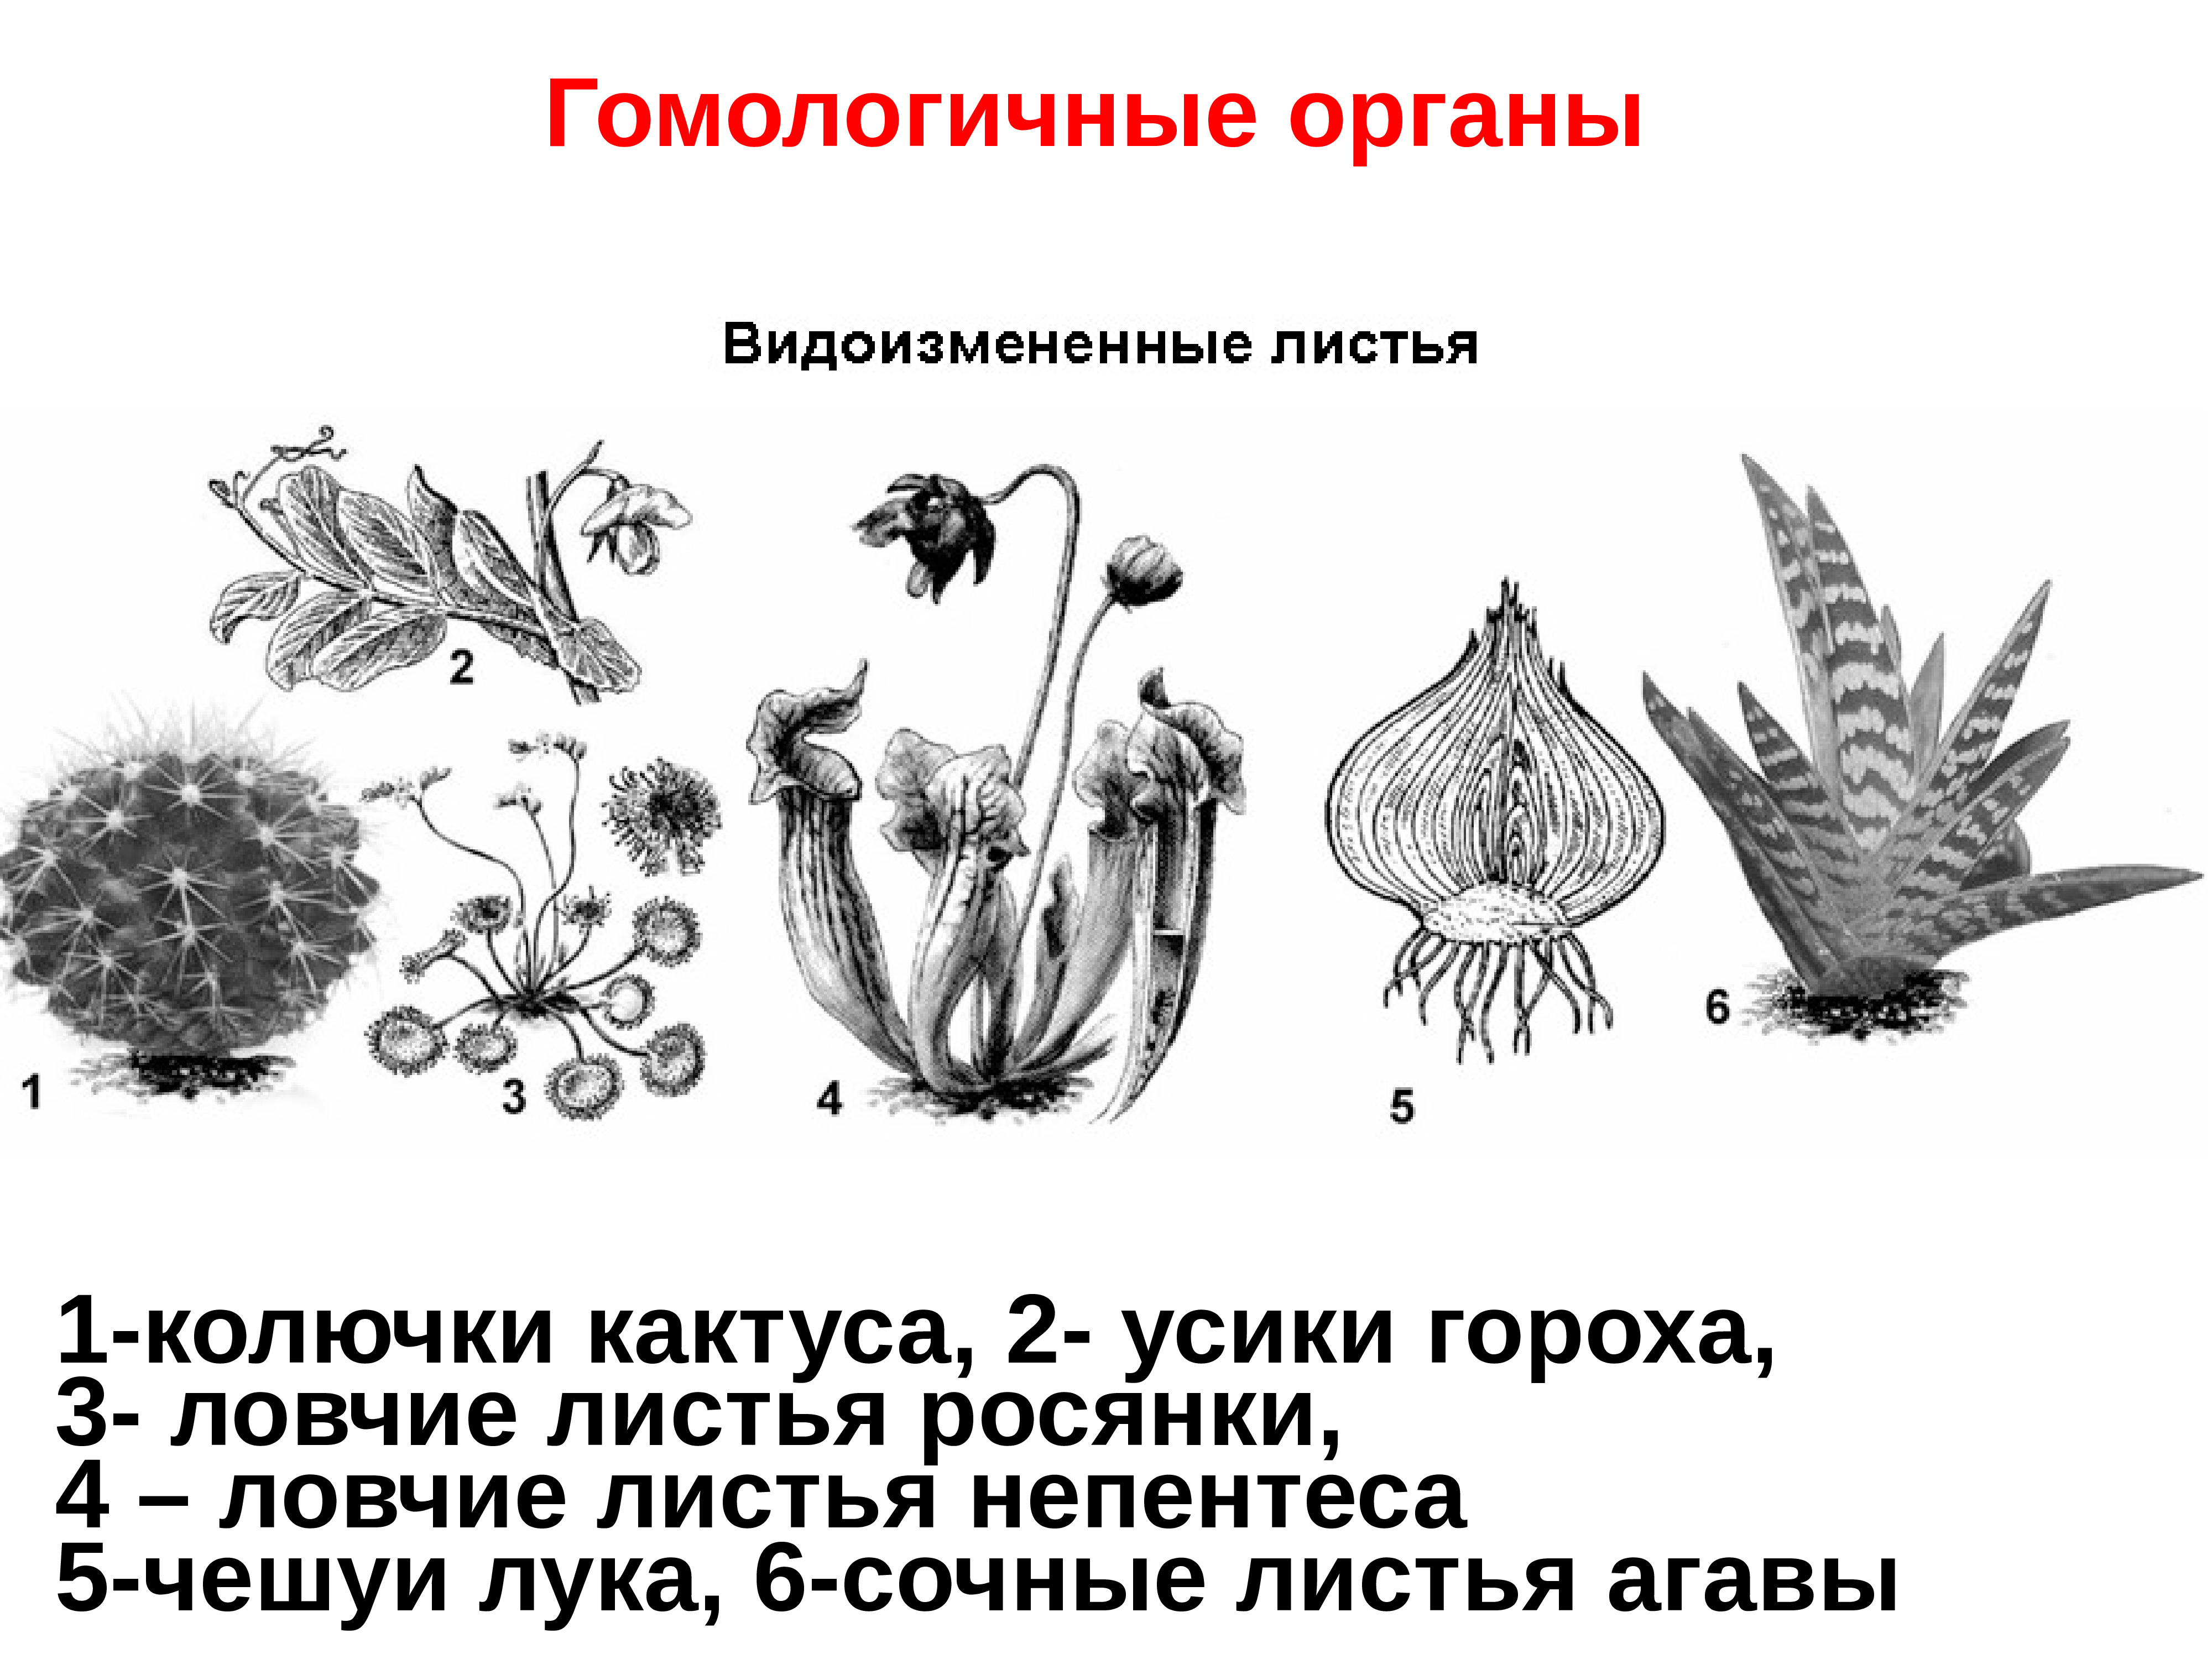 Аналогичные органы растений